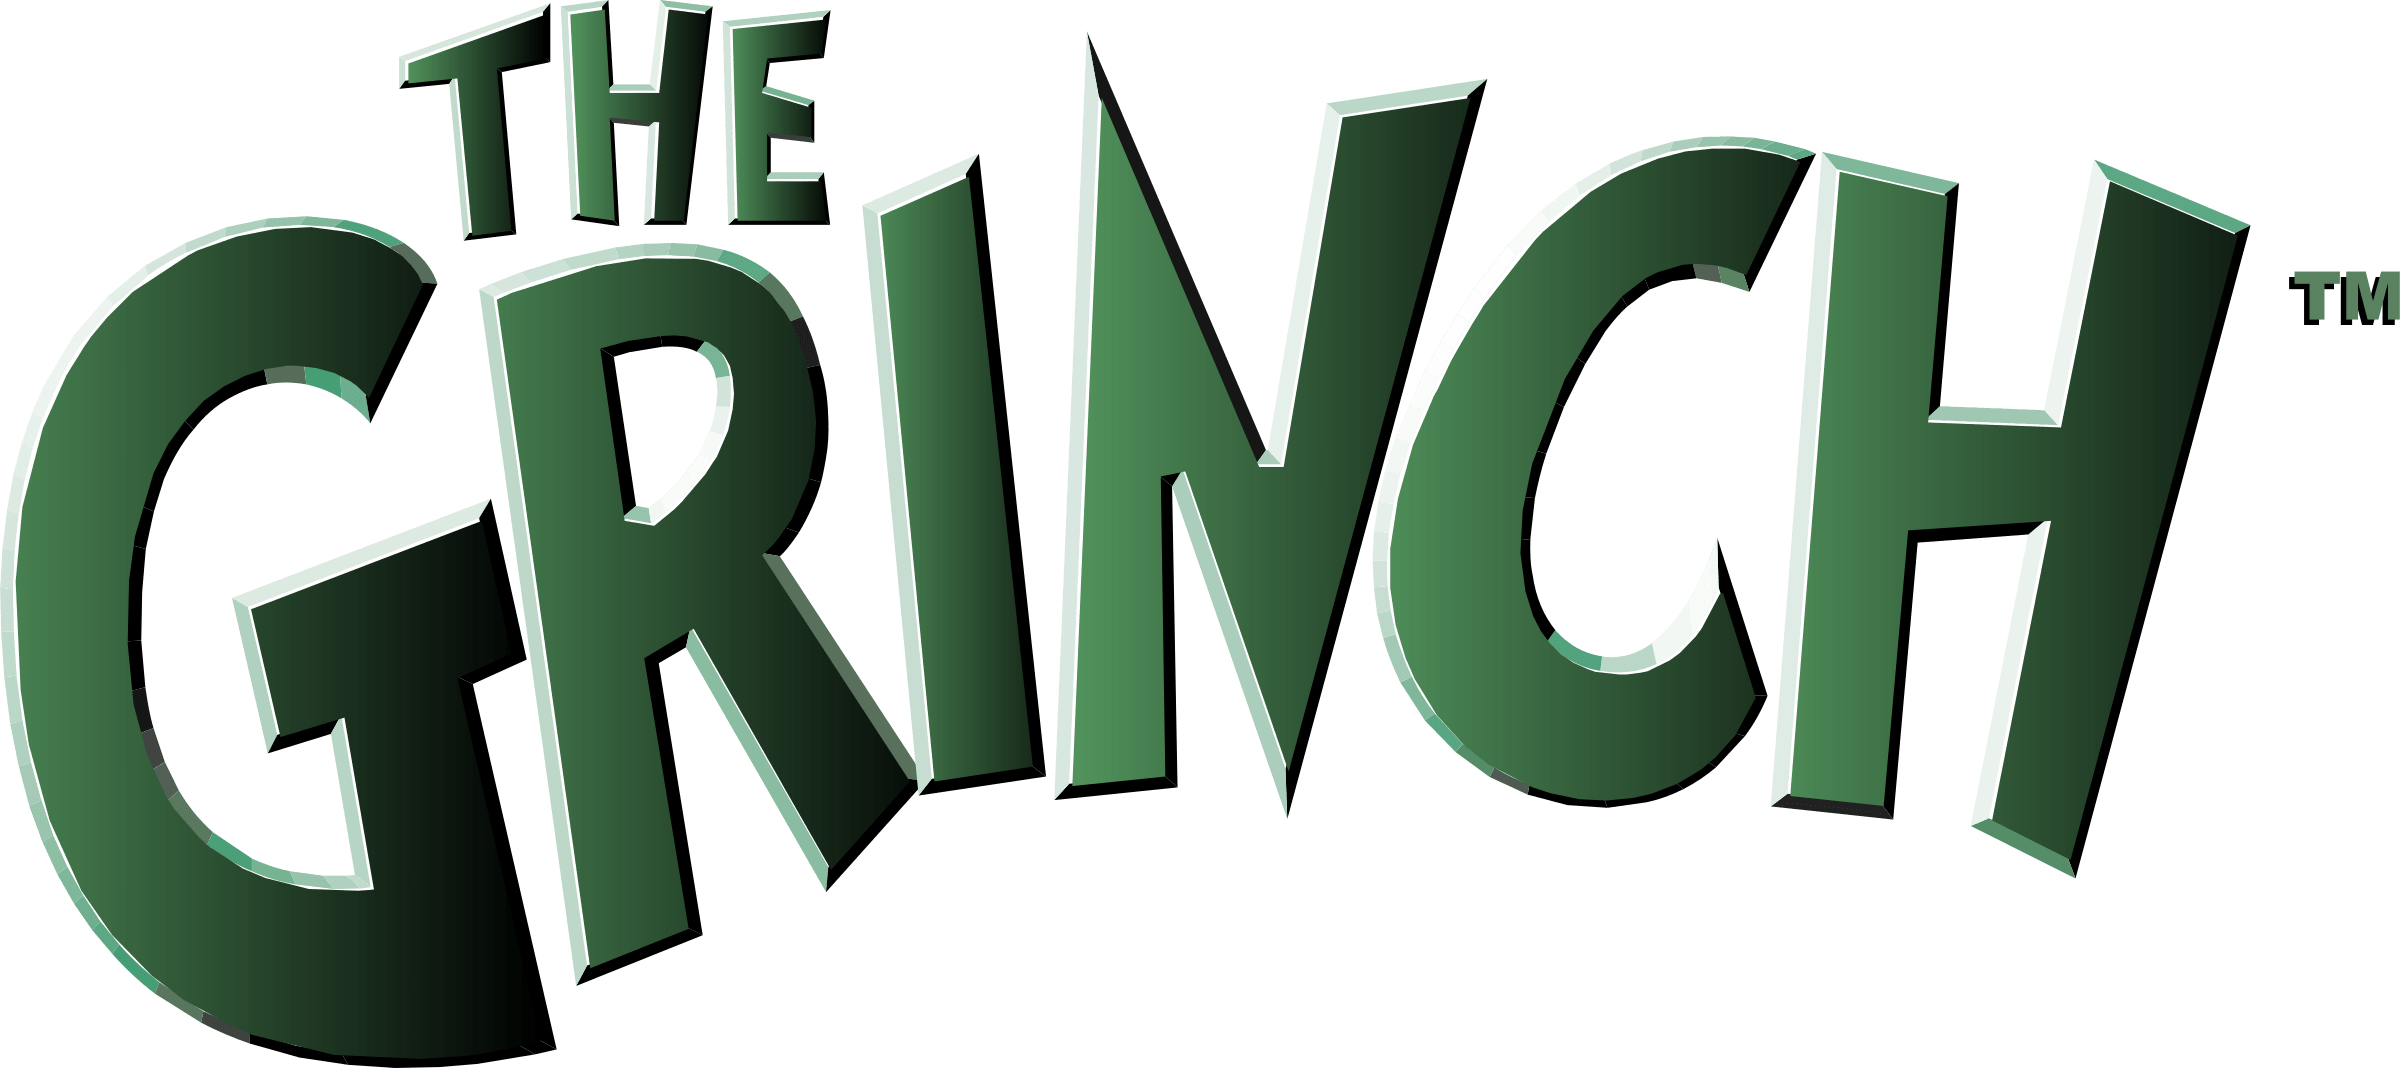 Grinch Logo - The Grinch Logo PNG Transparent & SVG Vector